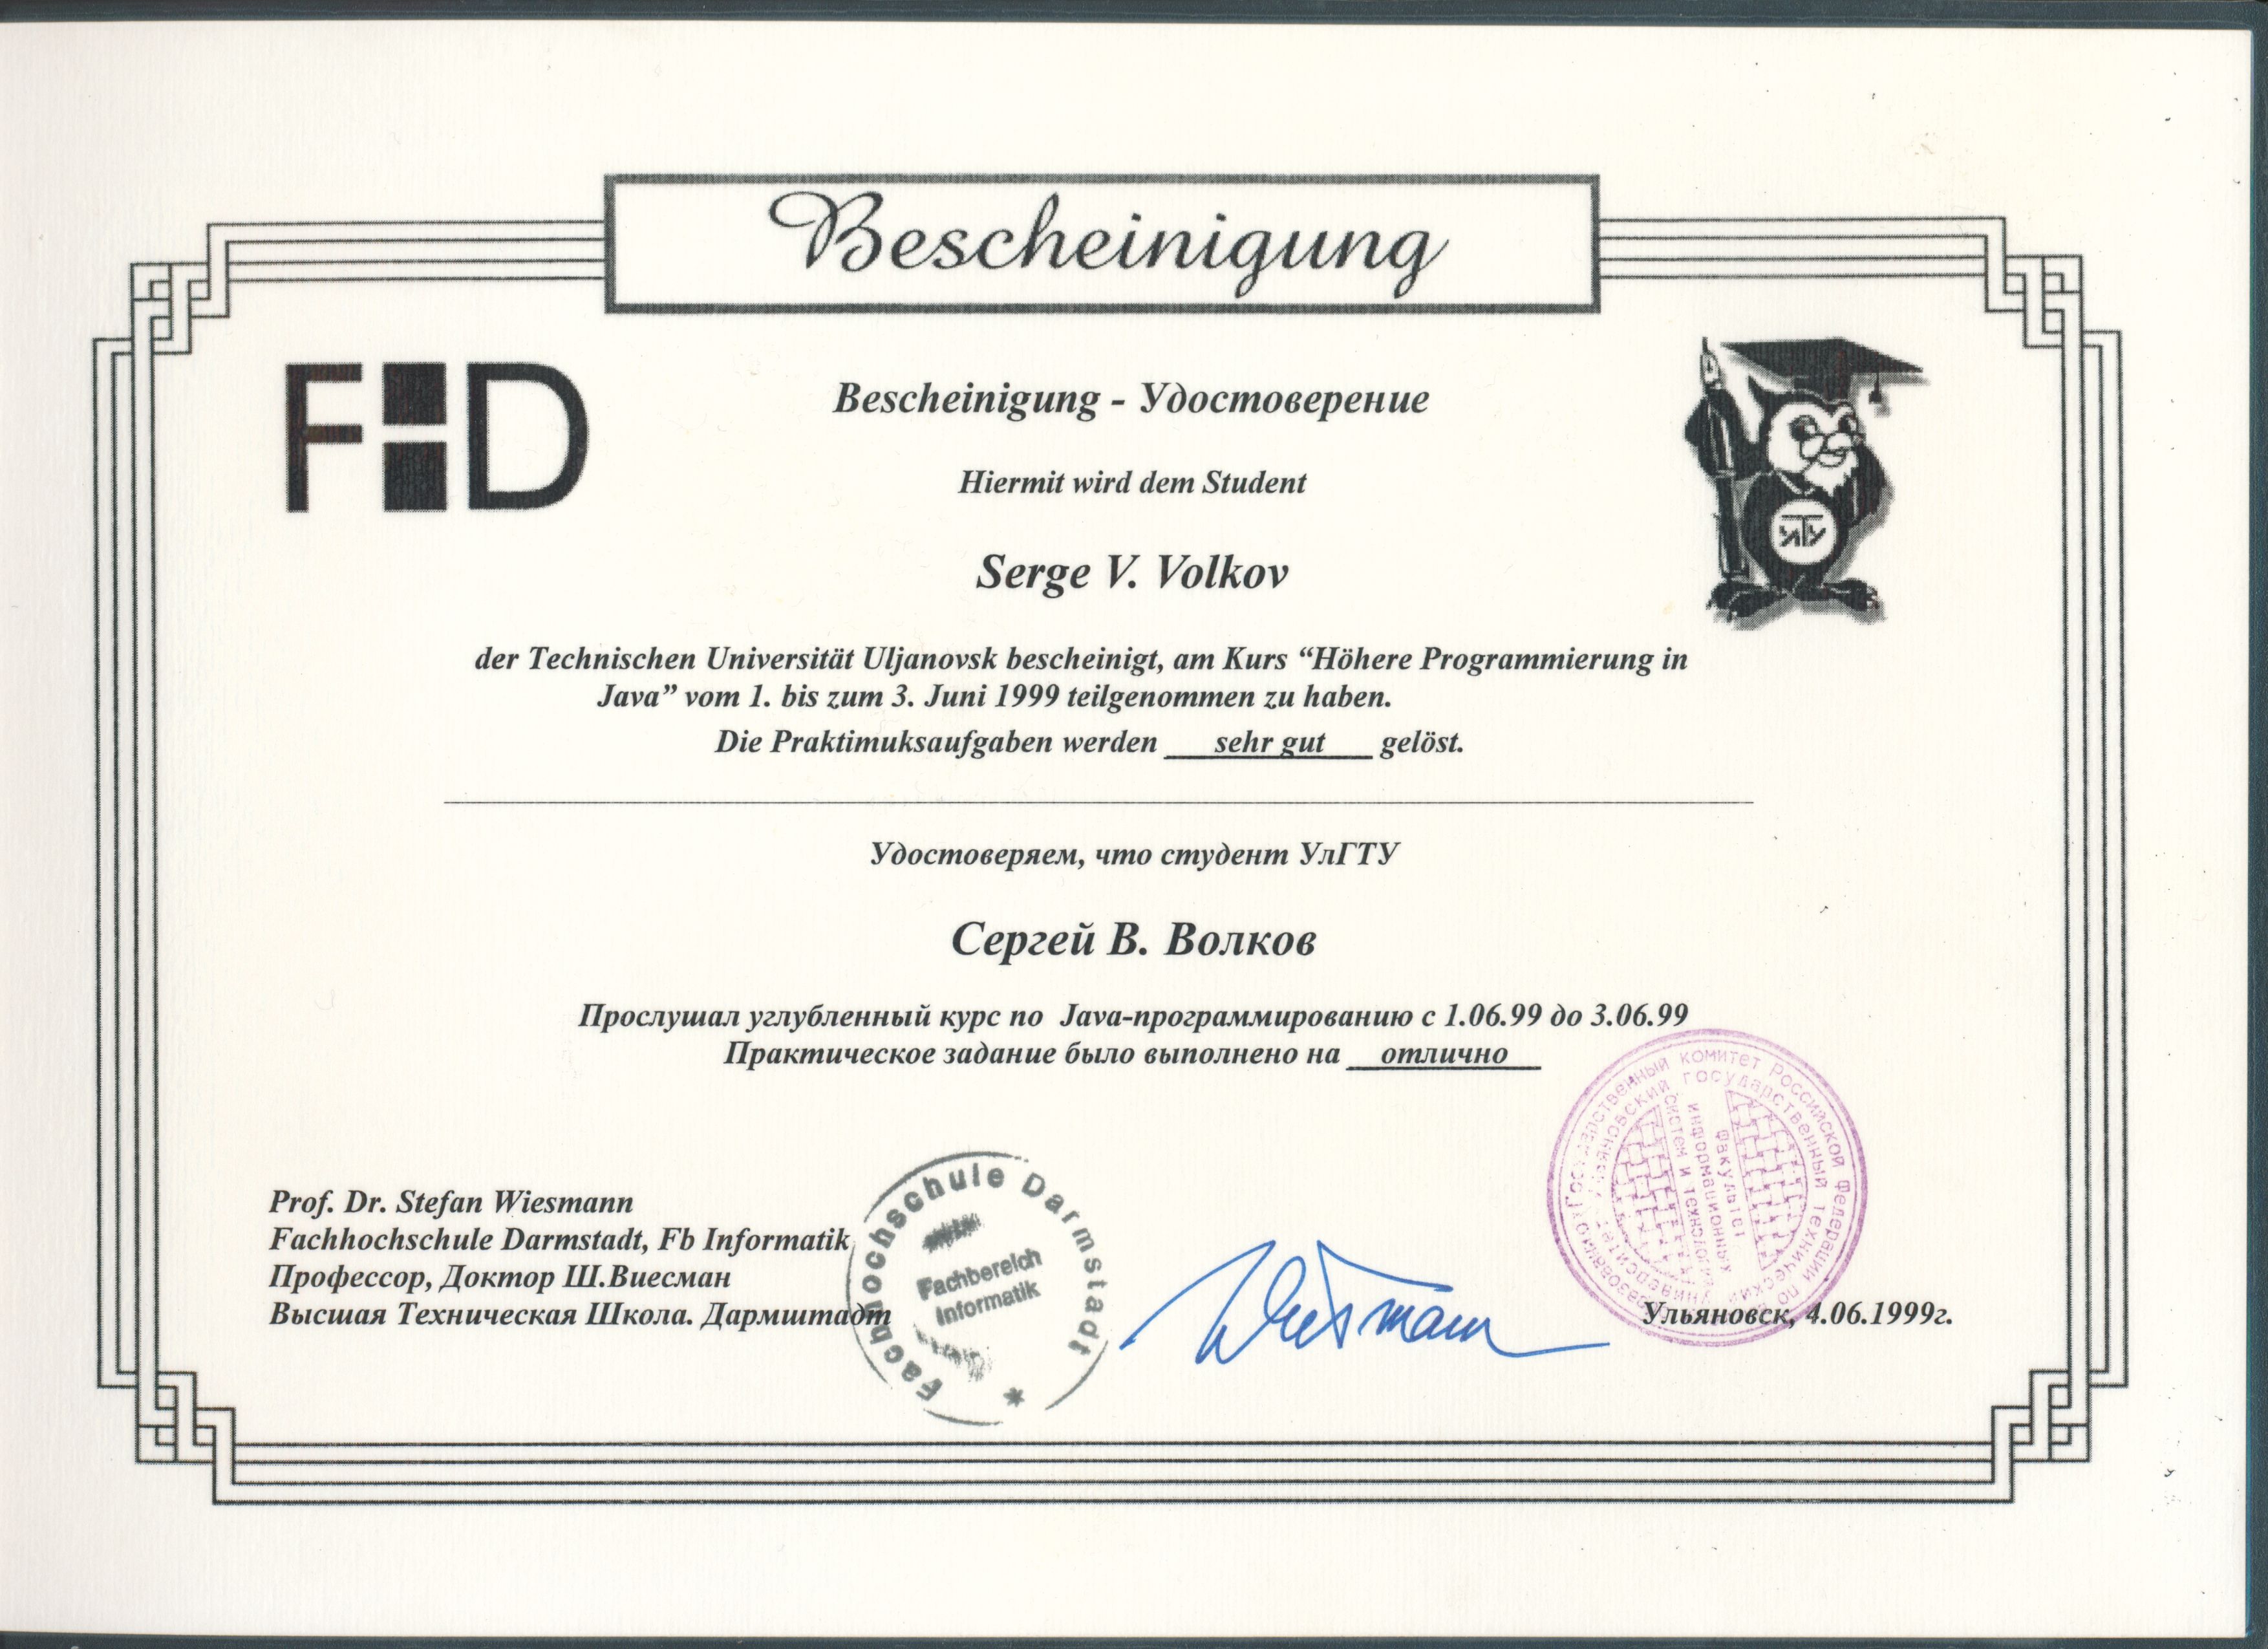 Удостоверение Java-программиста. Высшая техническая школа Дармштадта. Германия.